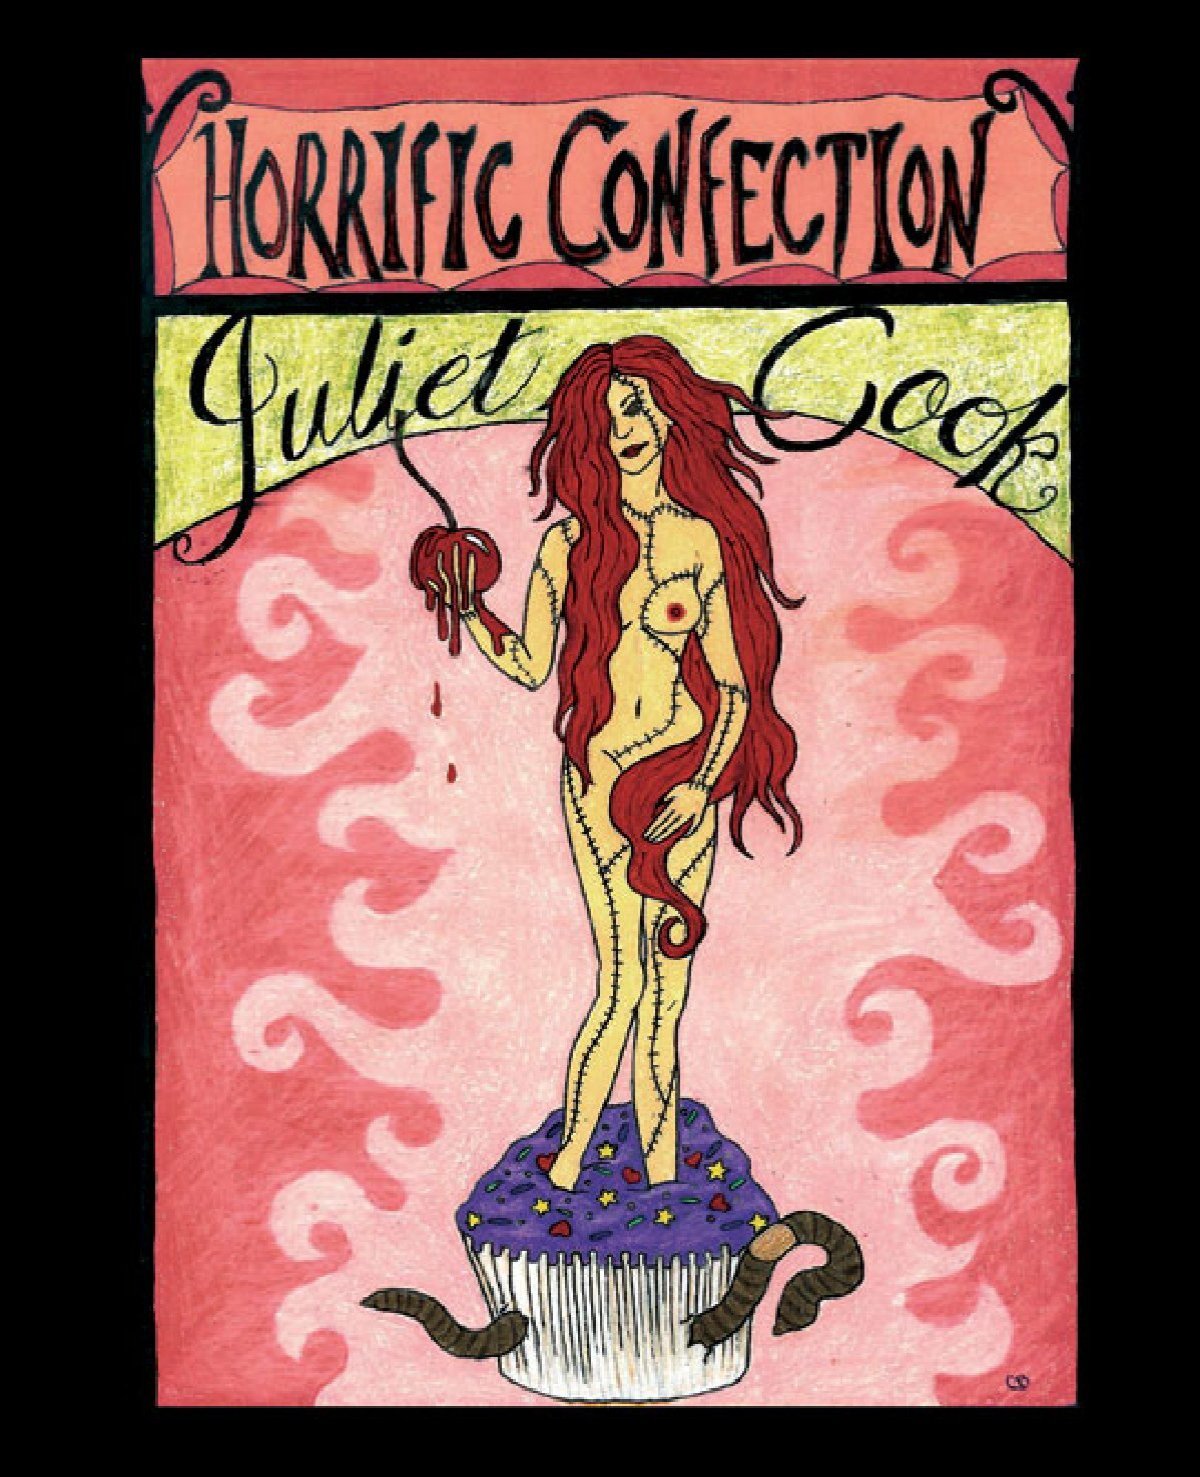 HORRIFIC CONFECTION by Juliet Cook